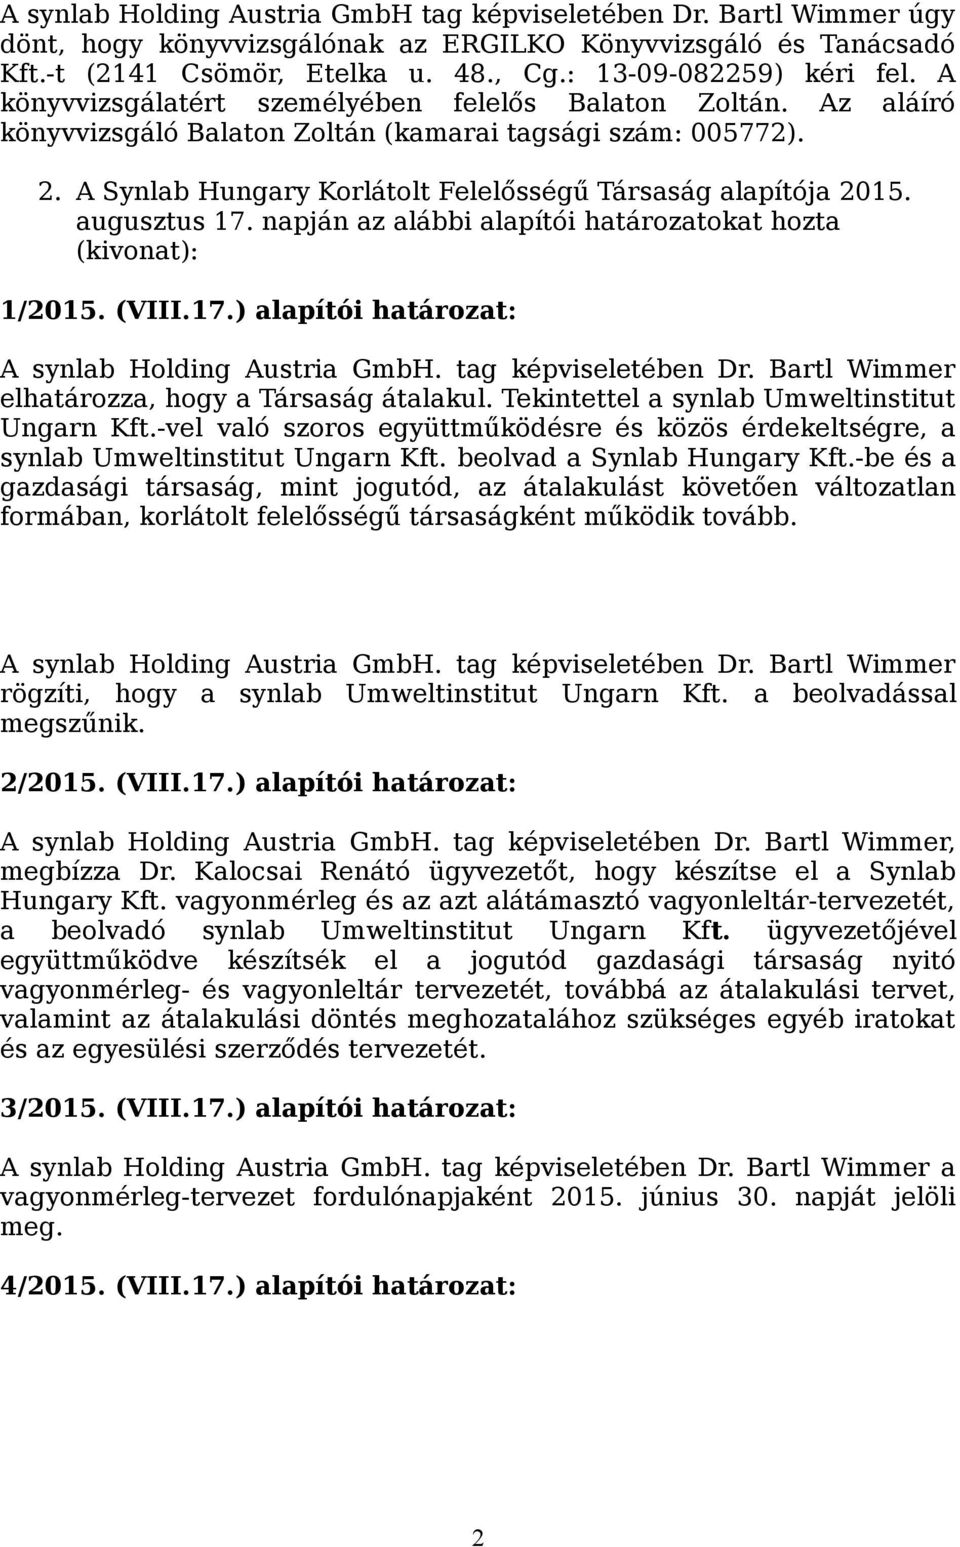 augusztus 17. napján az alábbi alapítói határozatokat hozta (kivonat): 1/2015. (VIII.17.) alapítói határozat: A synlab Holding Austria GmbH. tag képviseletében Dr.